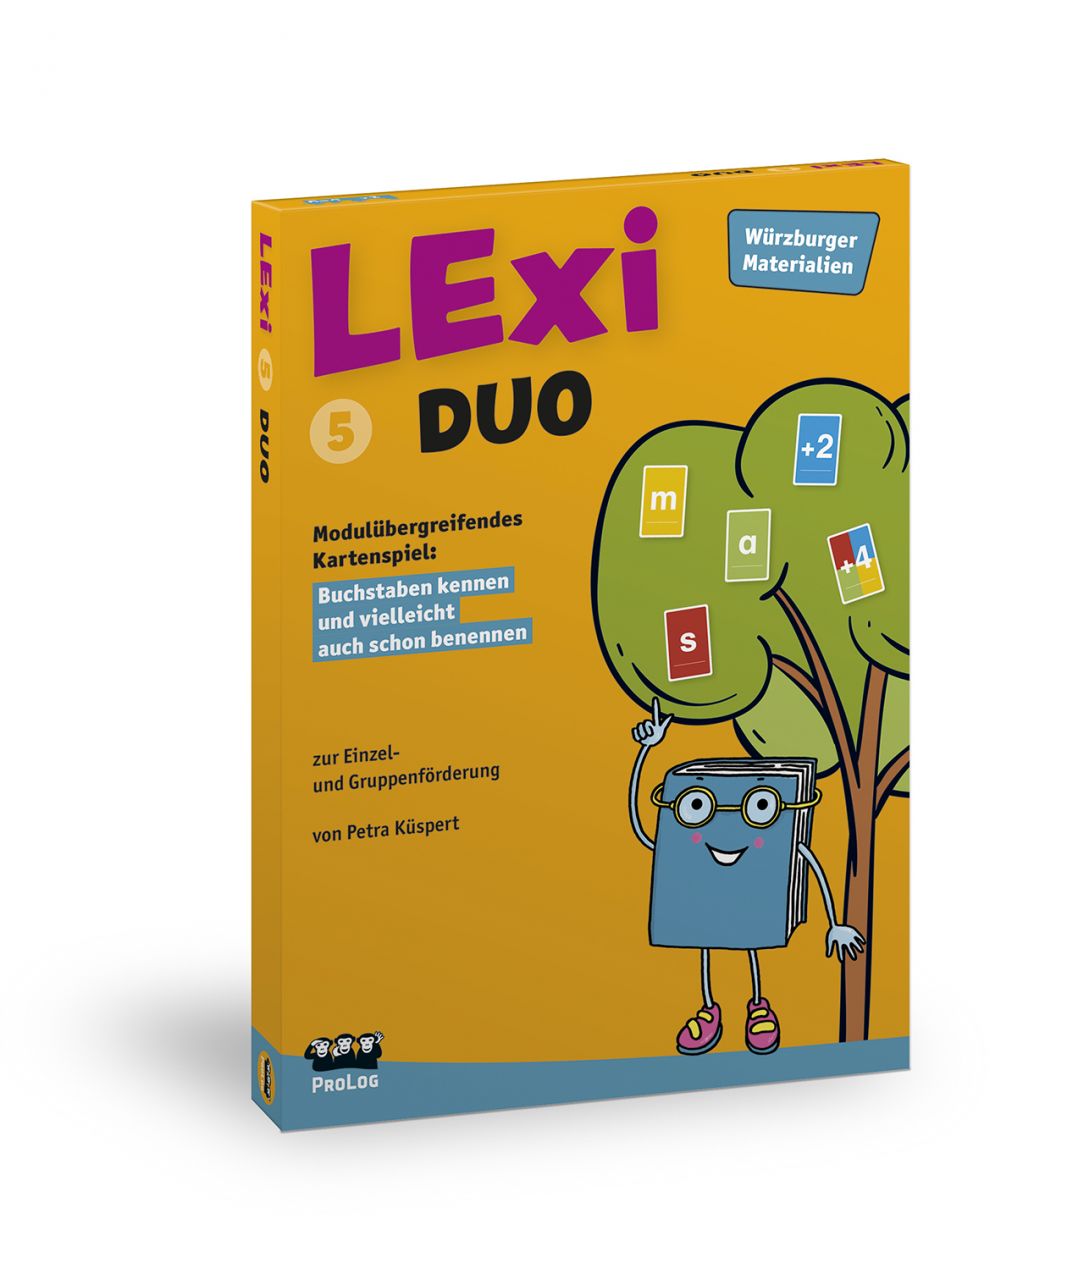 LExi 5 – DUO: Modulübergreifendes Kartenspiel - Buchstaben kennen und vielleicht auch schon benennen - Subskriptionsrabatt bis zum Erscheinungstermin vorauss. Frühjahr/Sommer 2024!